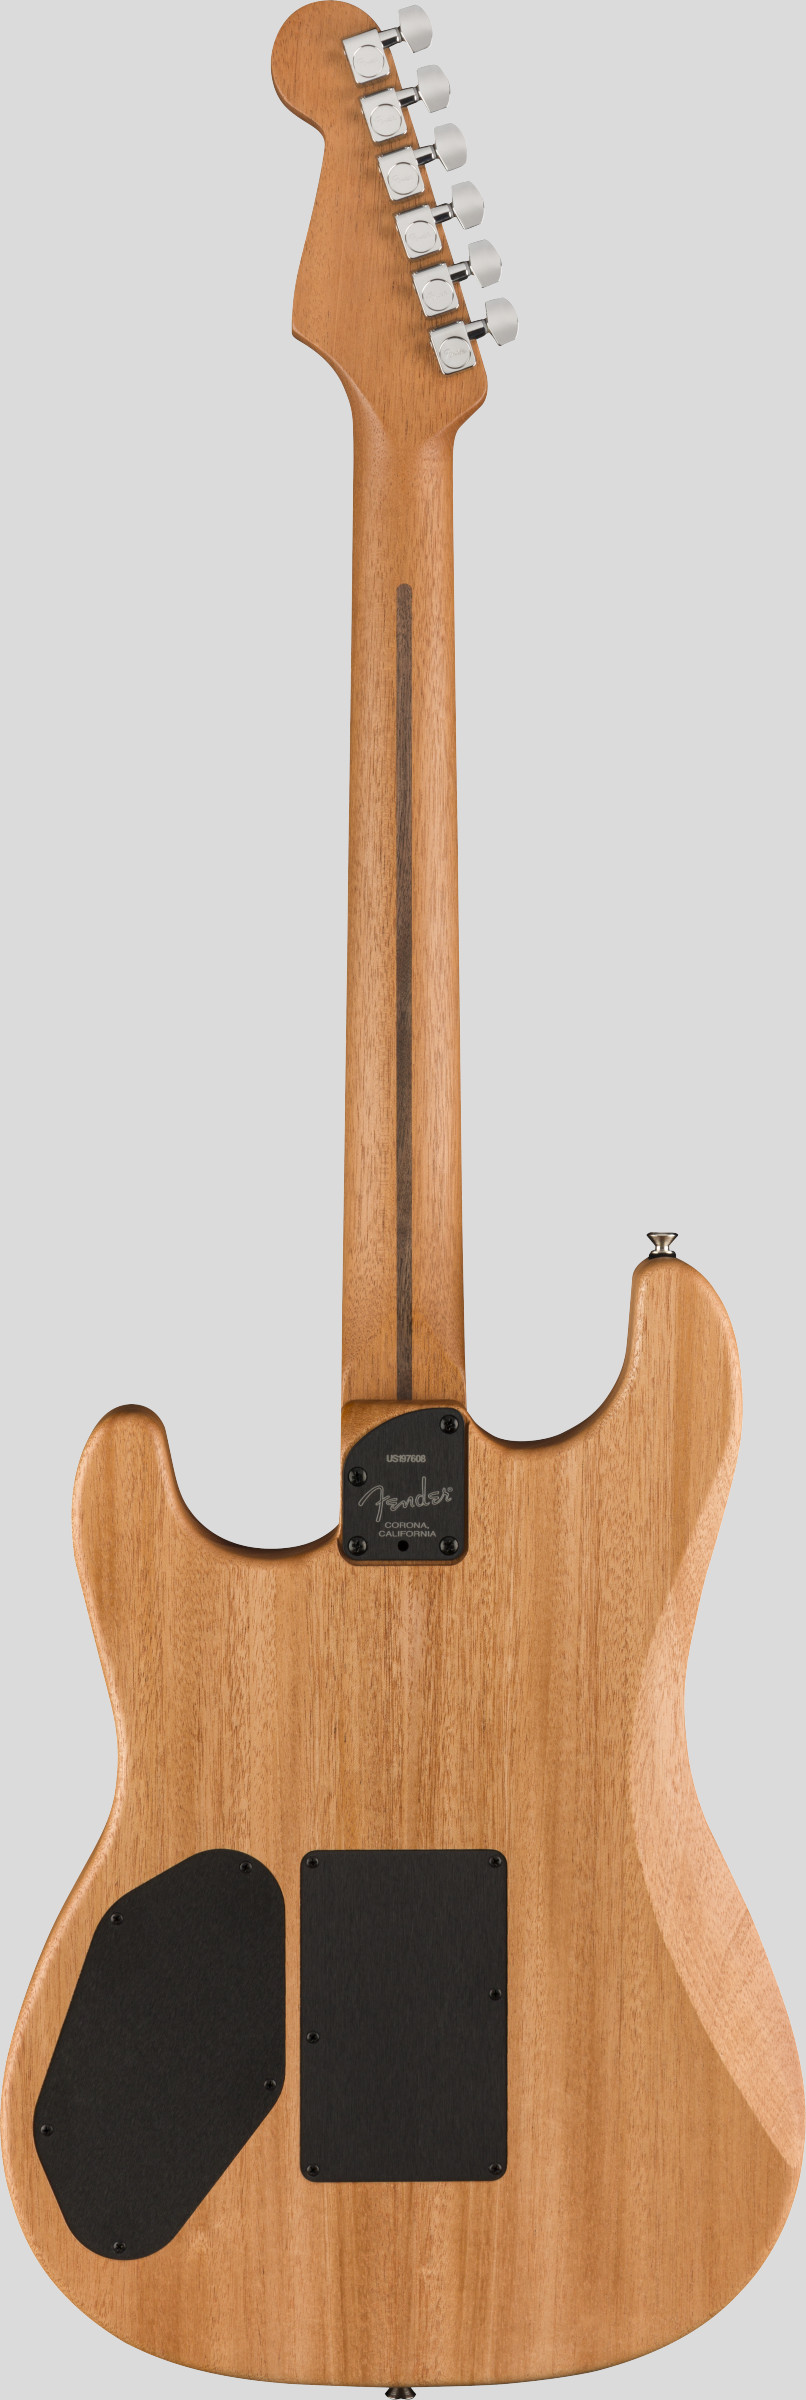 Fender American Acoustasonic Stratocaster 3-Color Sunburst 2